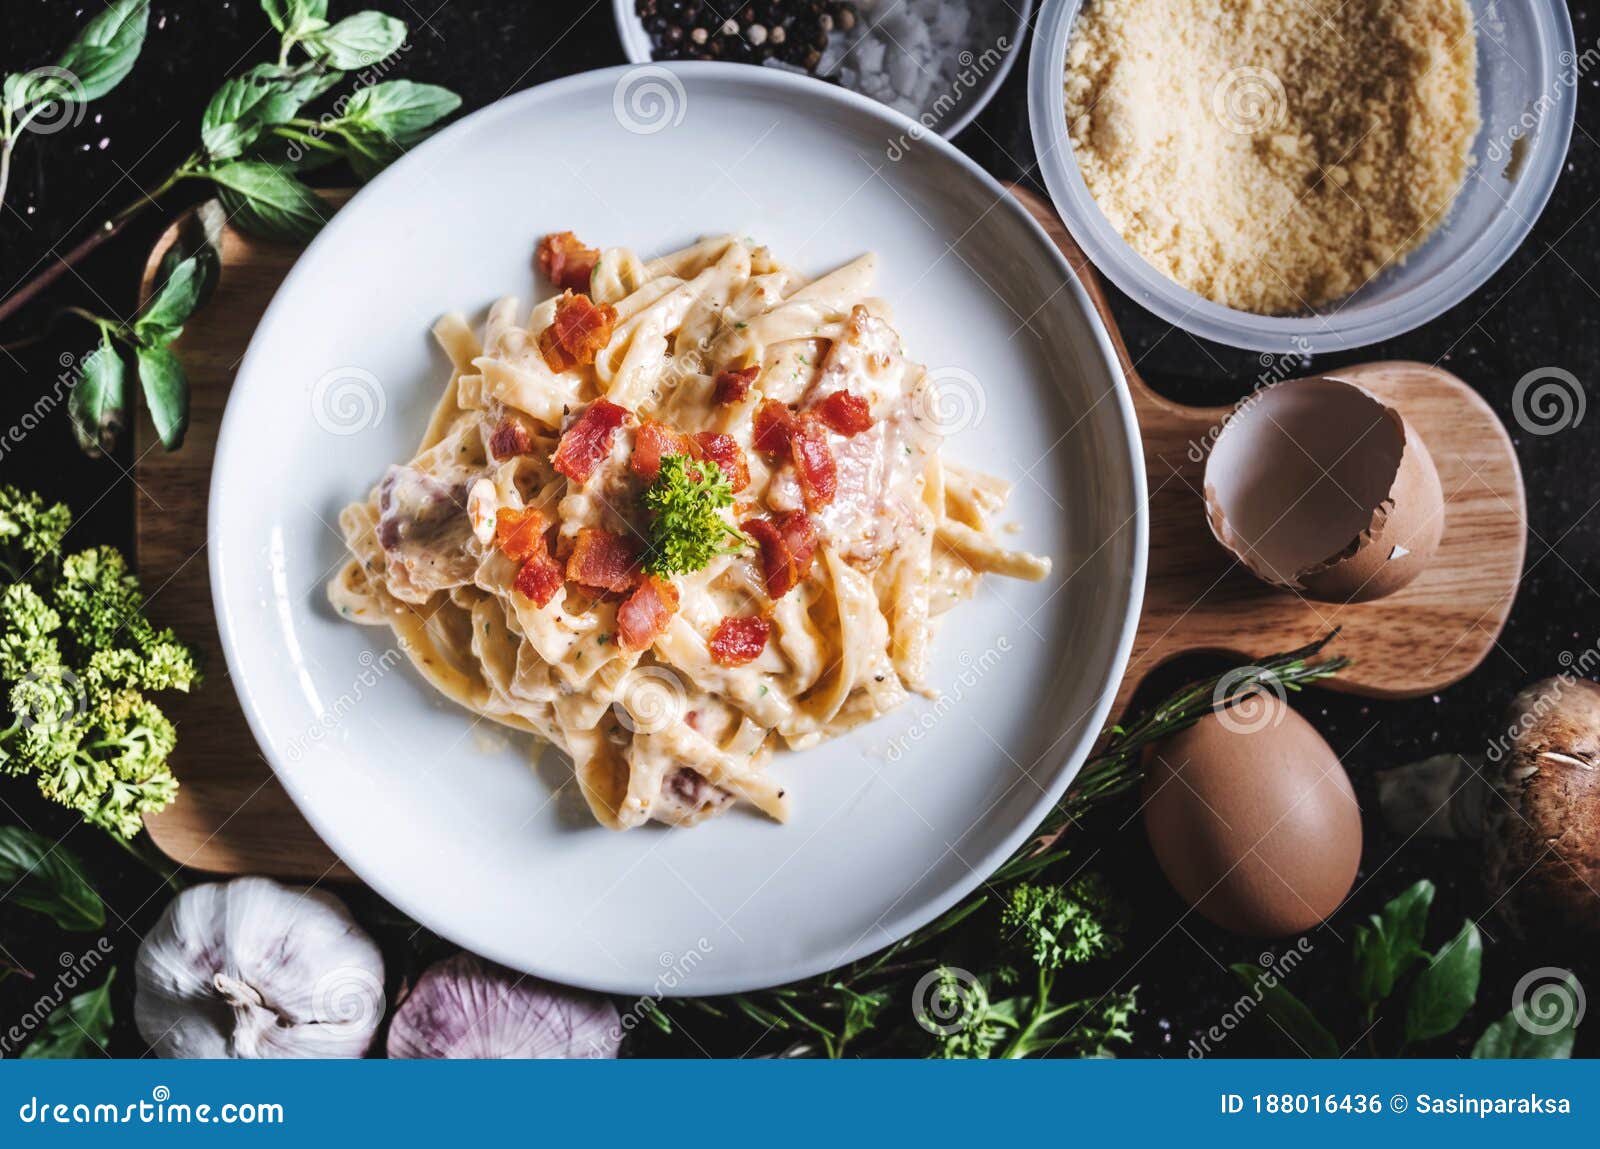 pasta carbonara in white dish, surround fresh ingredient